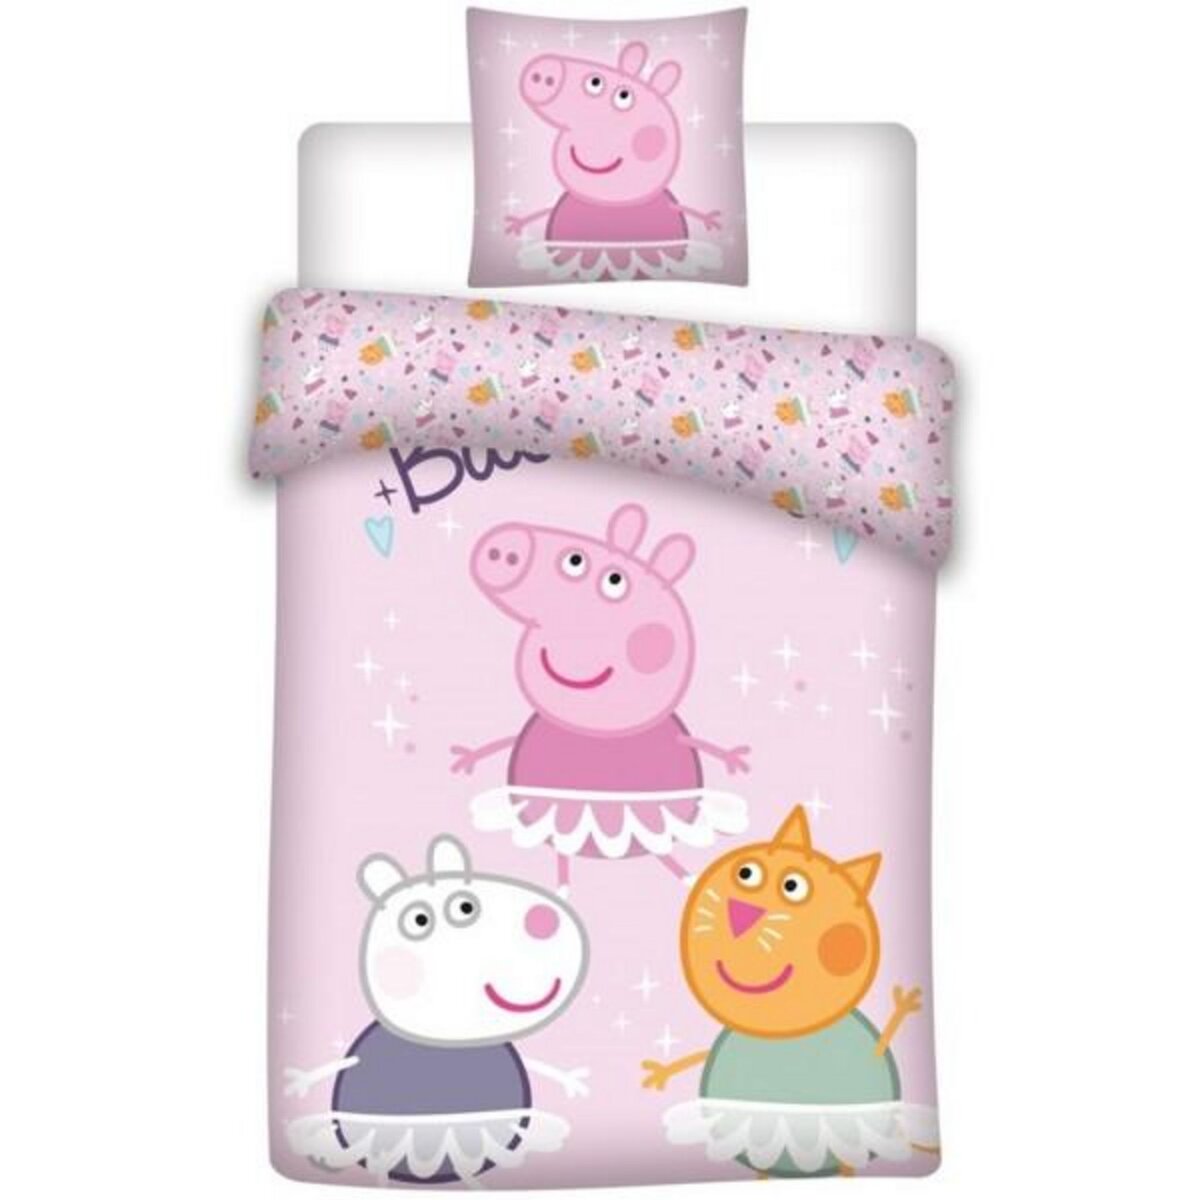 Peppa Pig Peppa Pig - Housse de Couette Enfant Coton Pink - Parure de Lit 140x200 cm Taie 65x65 cm